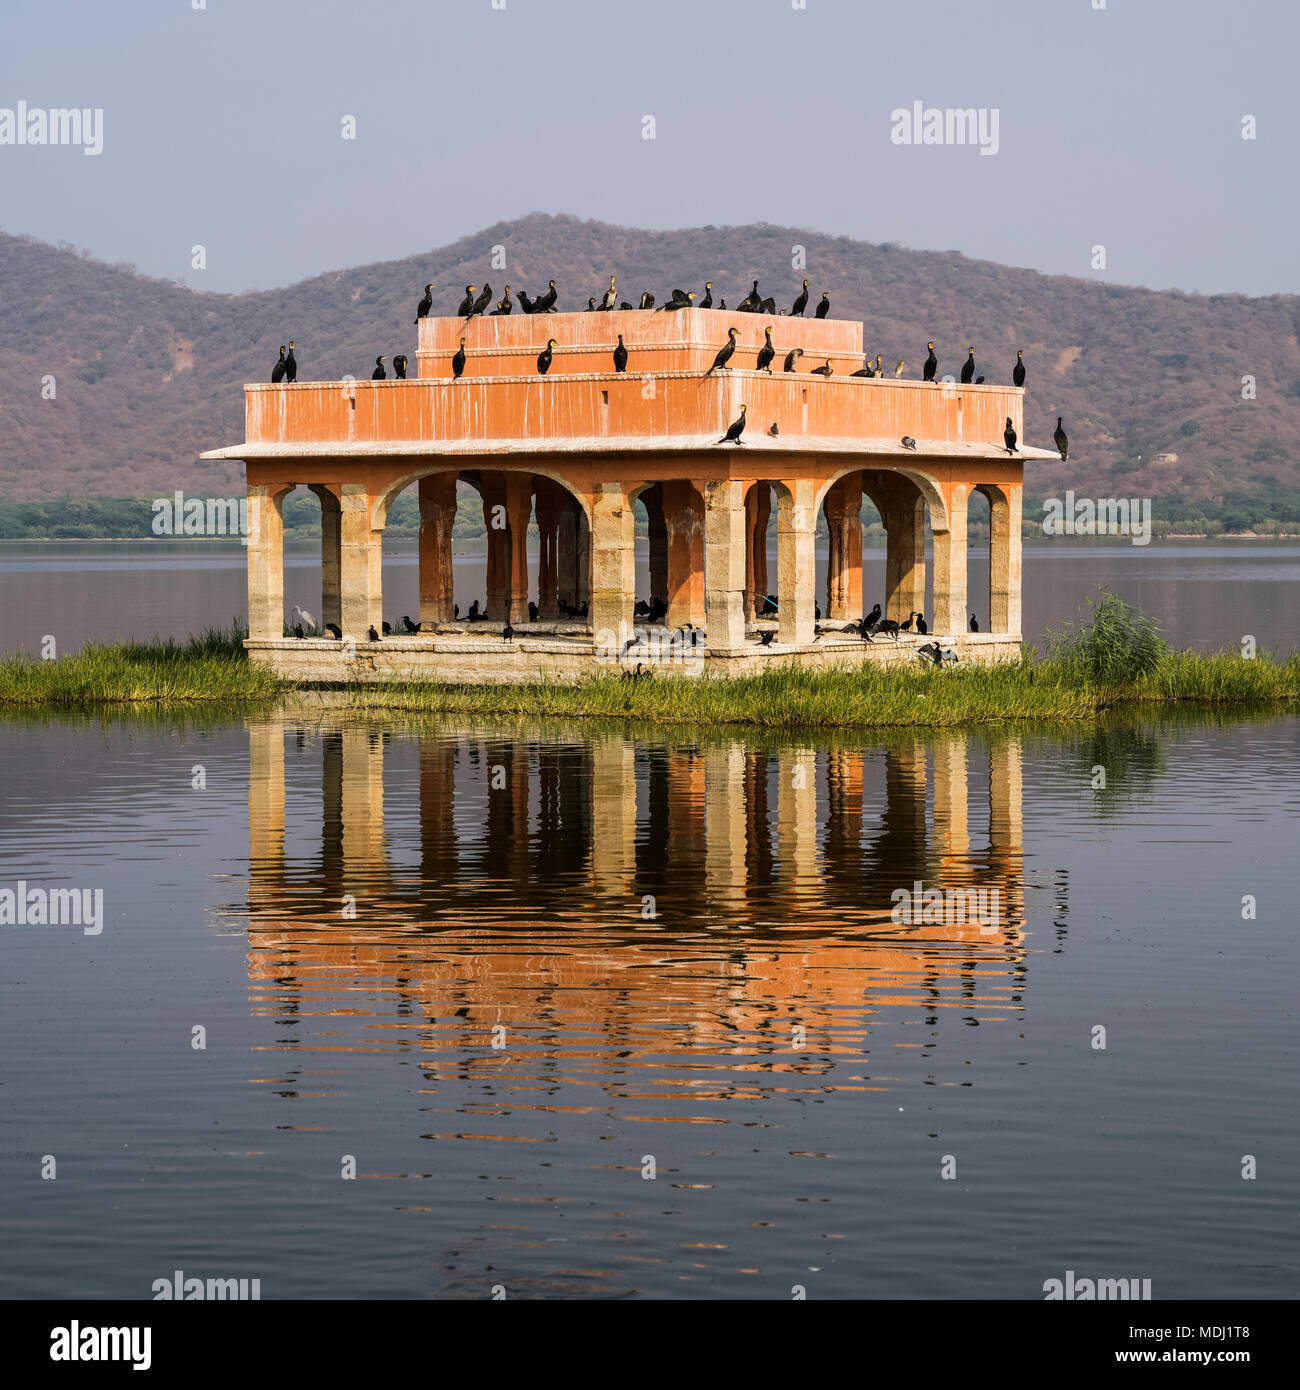 Jal Mahal Palace immergé dans le lac avec sucre homme oiseaux posés sur elle, Jaipur, Rajasthan, Inde Banque D'Images